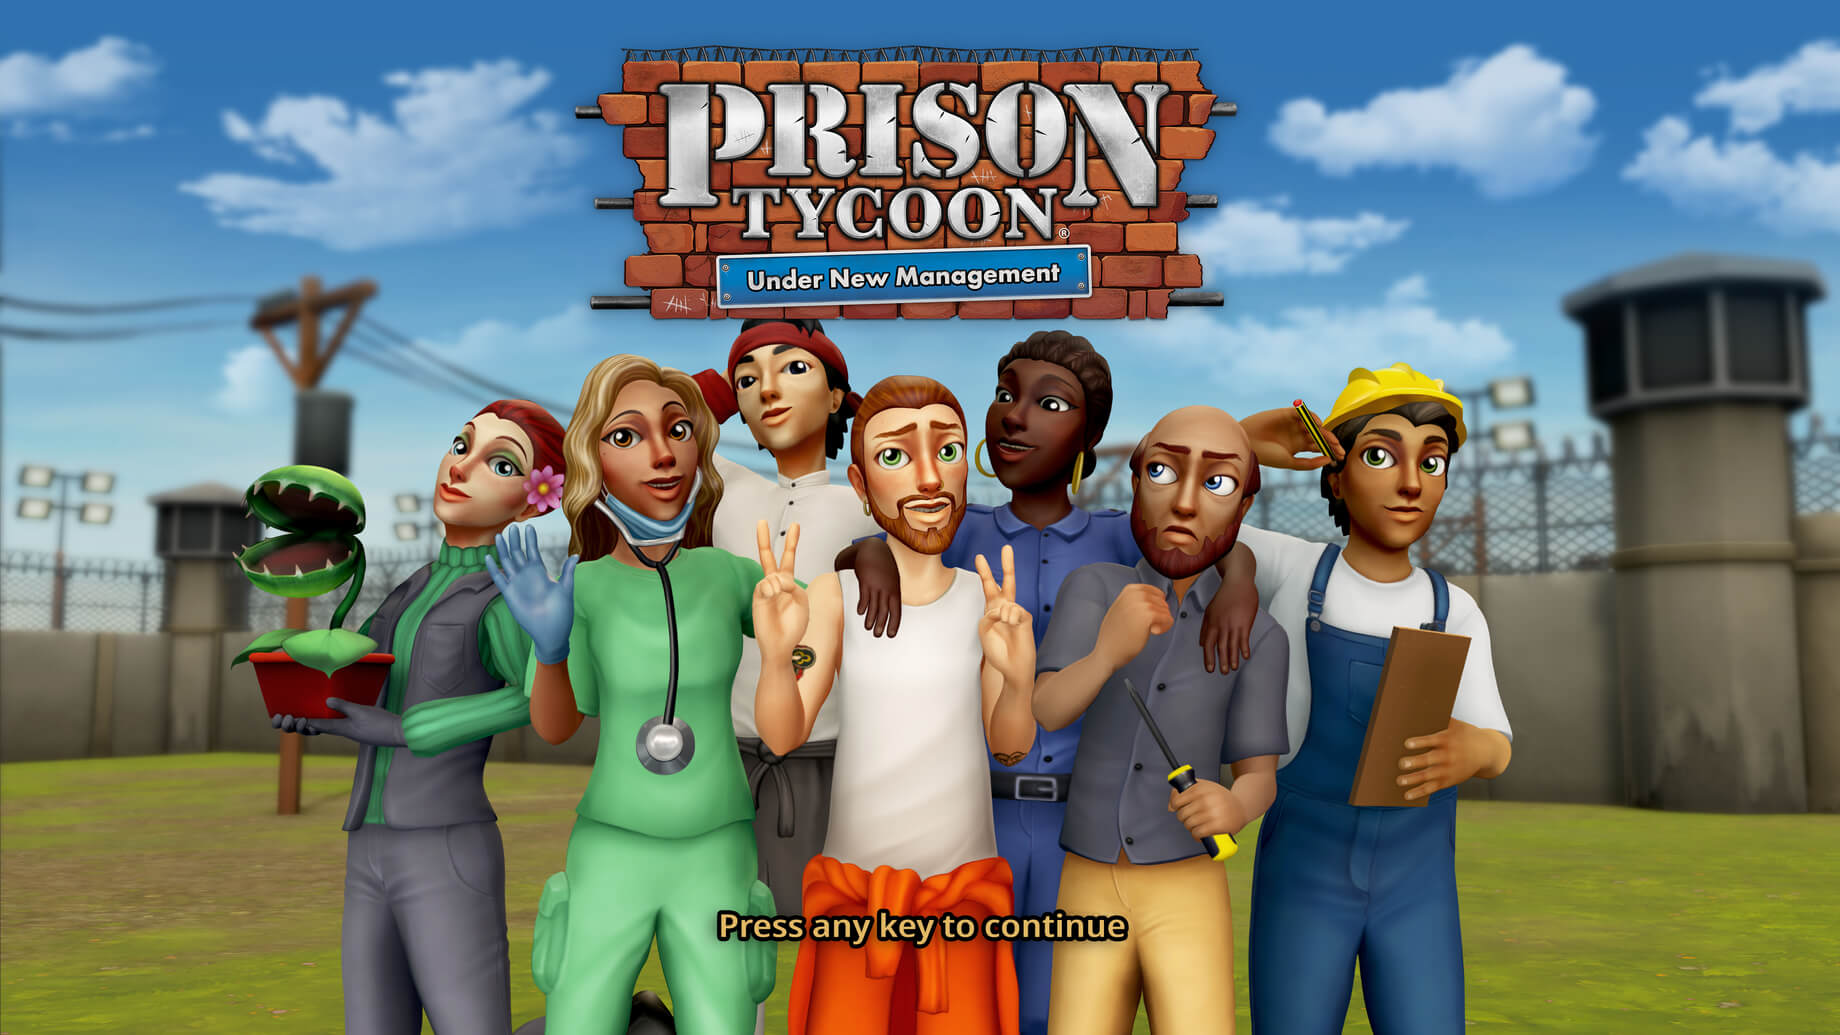 ▷ Prison Tycoon: Under New Management | Abylight Barcelona | Estudio de desarrolladores independientes de videojuegos en Barcelona.